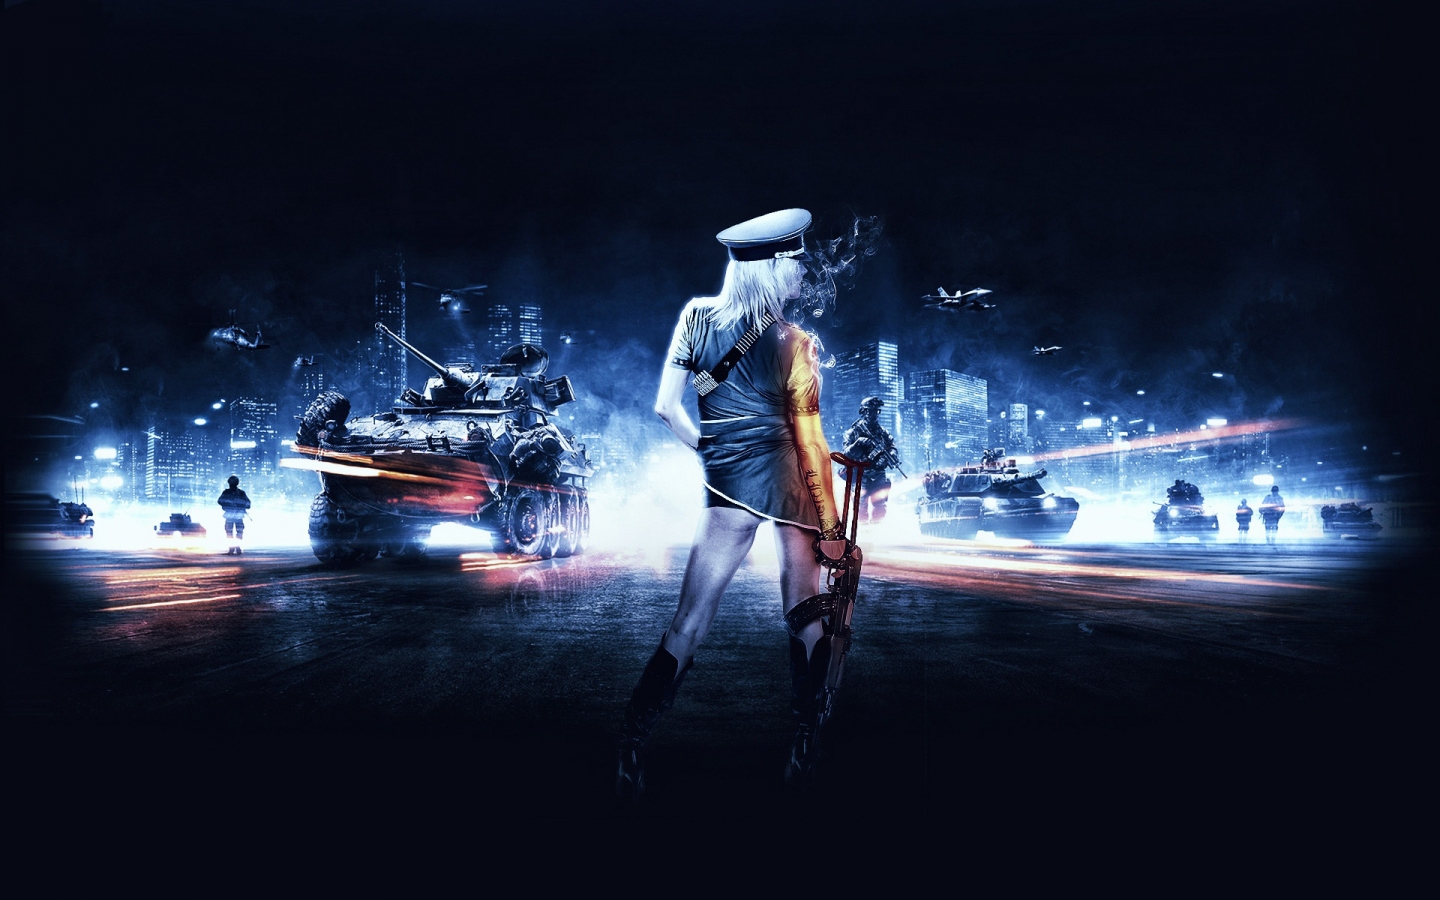 Battlefield 3 Girl for 1440 x 900 widescreen resolution